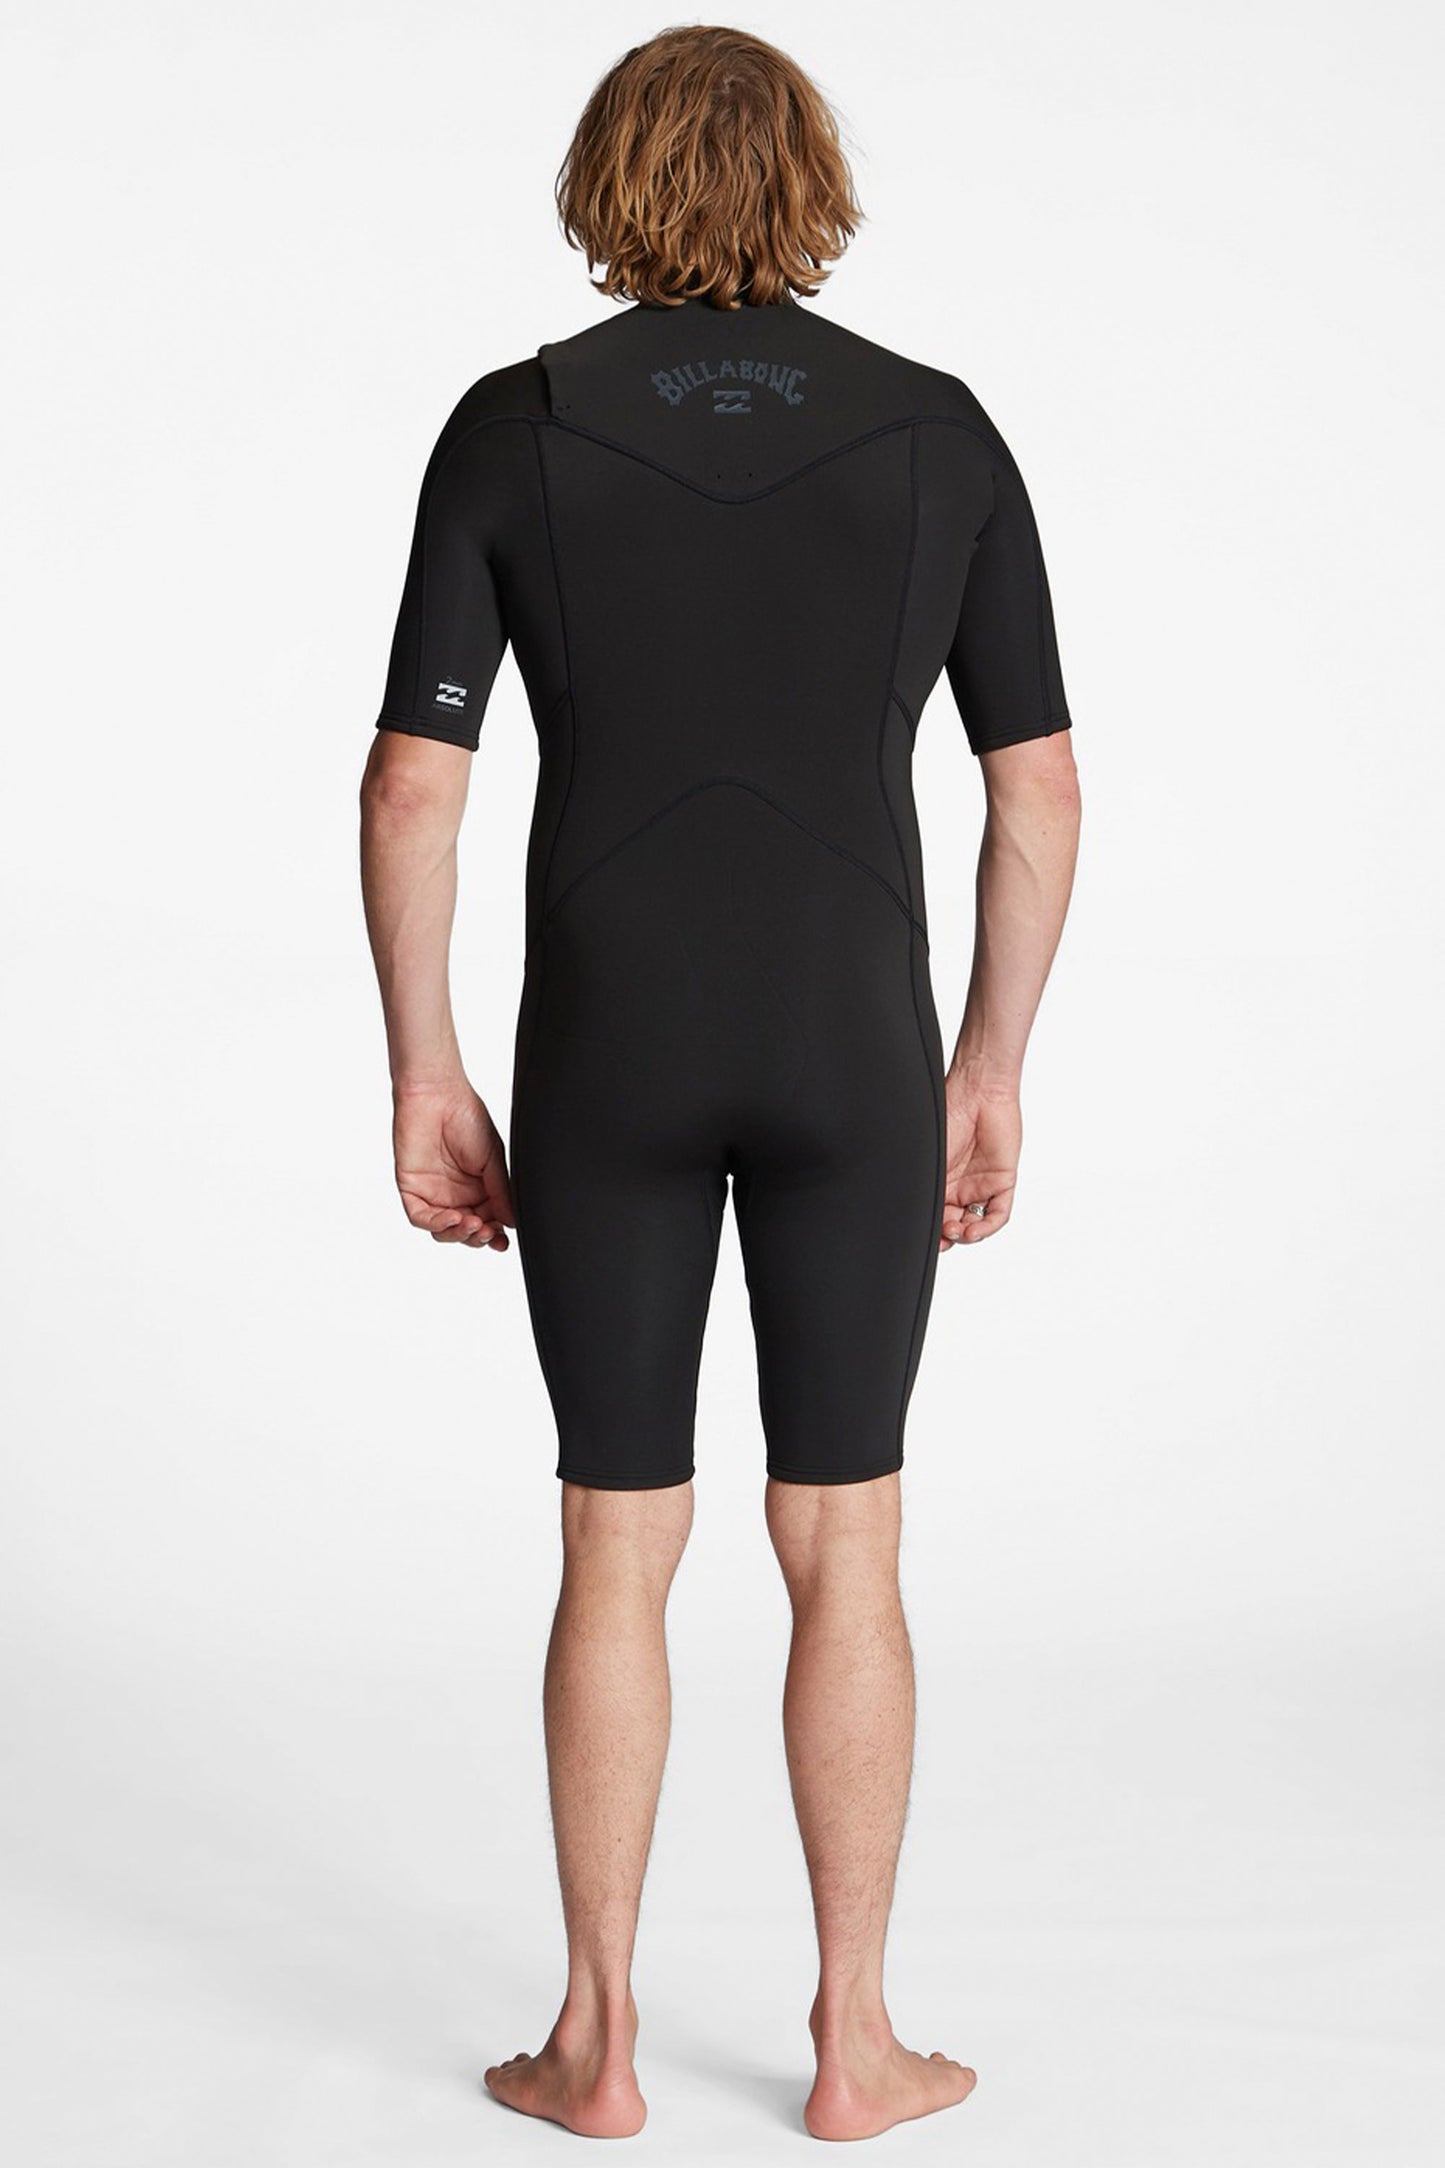 Pukas-Surf-Shop-billabong-wetsuit-Billabong-absolute-2-2mm-chest-zip